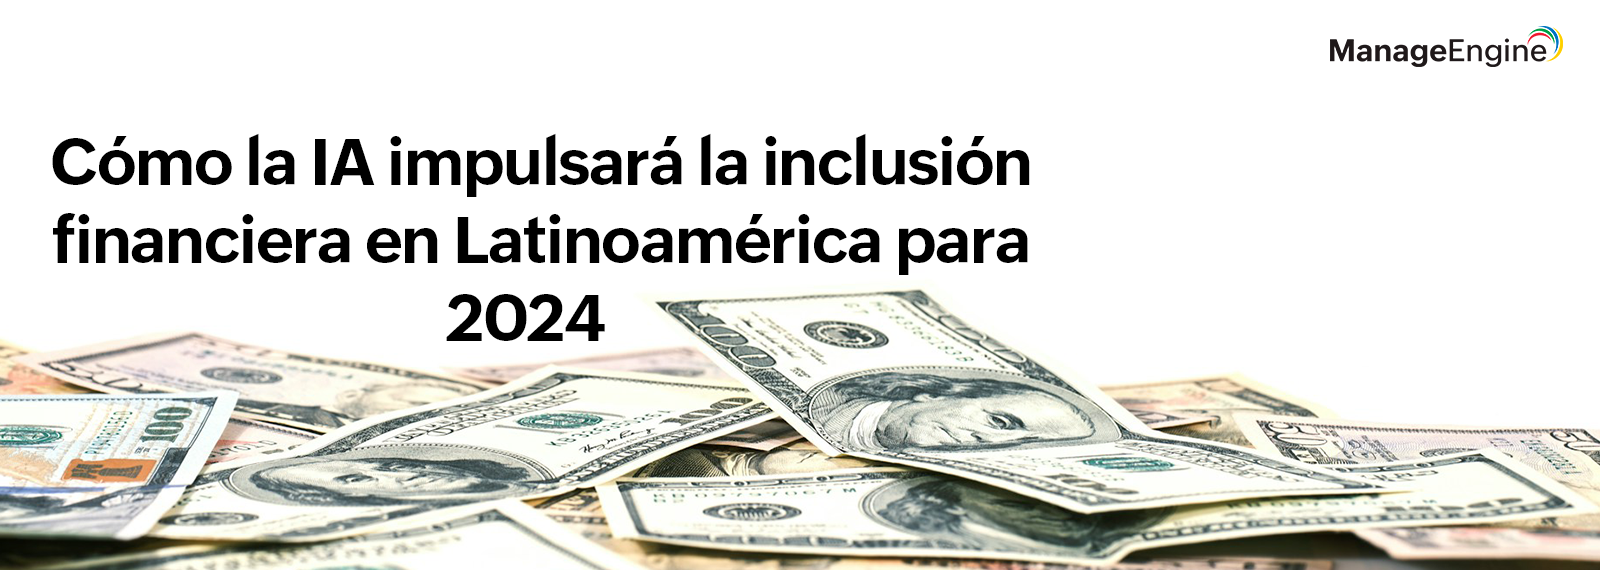 Cómo la inteligencia artificial (IA) impulsará la inclusión y el crecimiento financiero en Latinoamérica para 2024